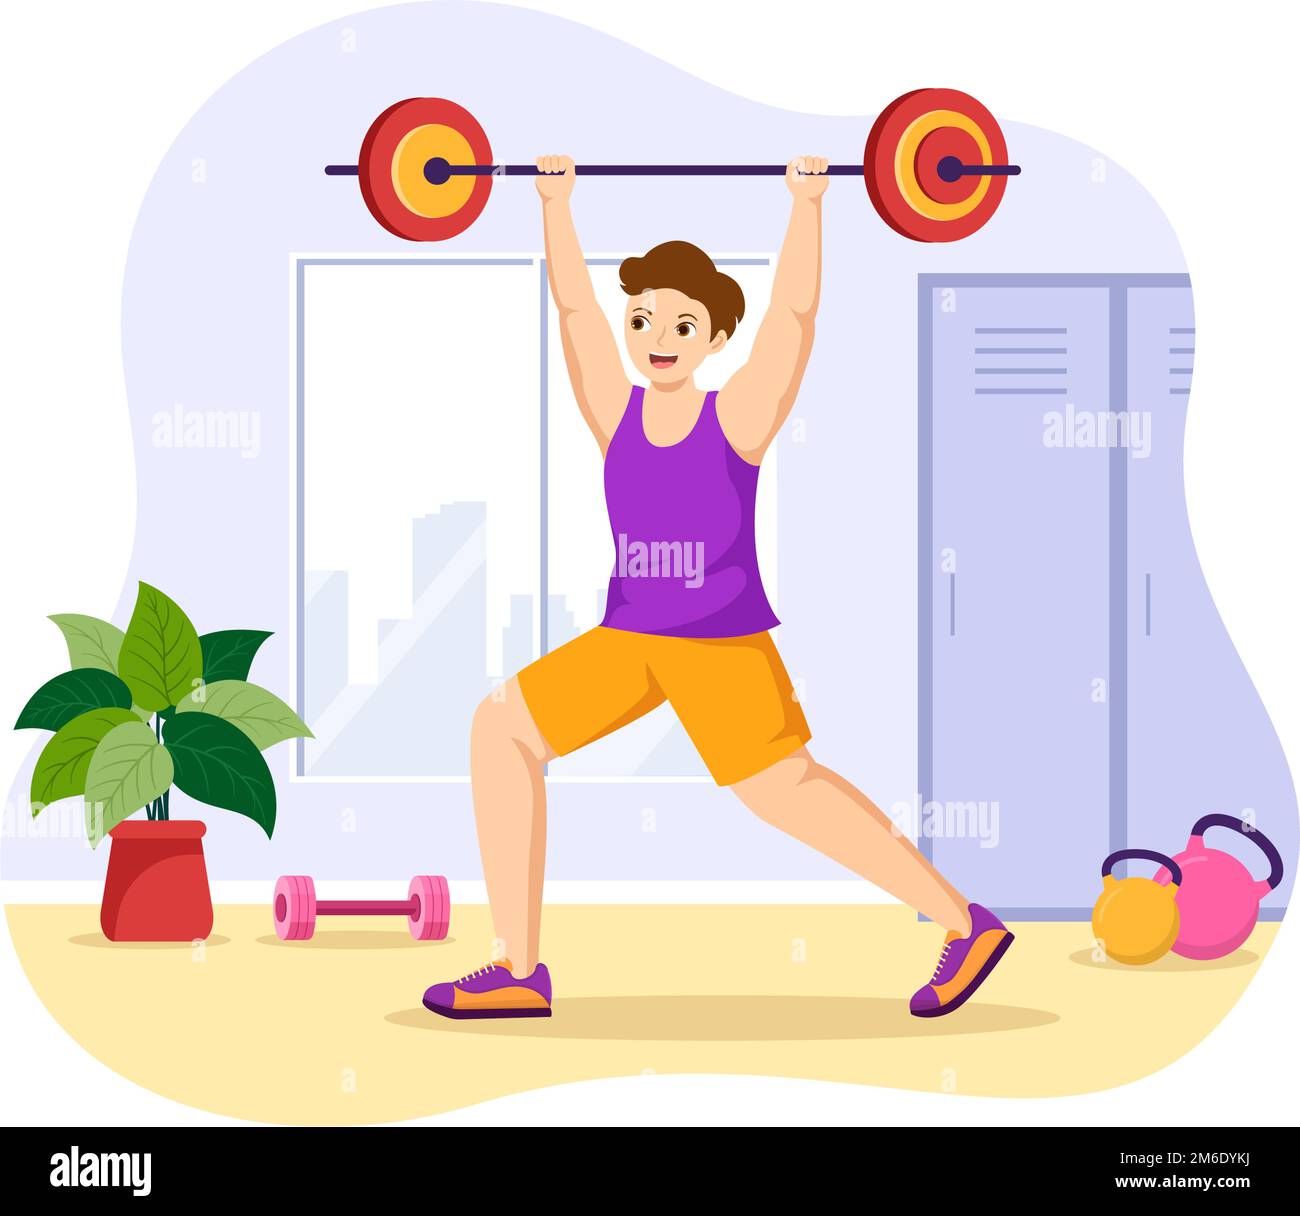 Weightlifting Sport Illustration with Athlete solleva un Barbell pesante, attrezzature per palestra e allestitori in modelli disegnati a mano su cartoni piatti Illustrazione Vettoriale